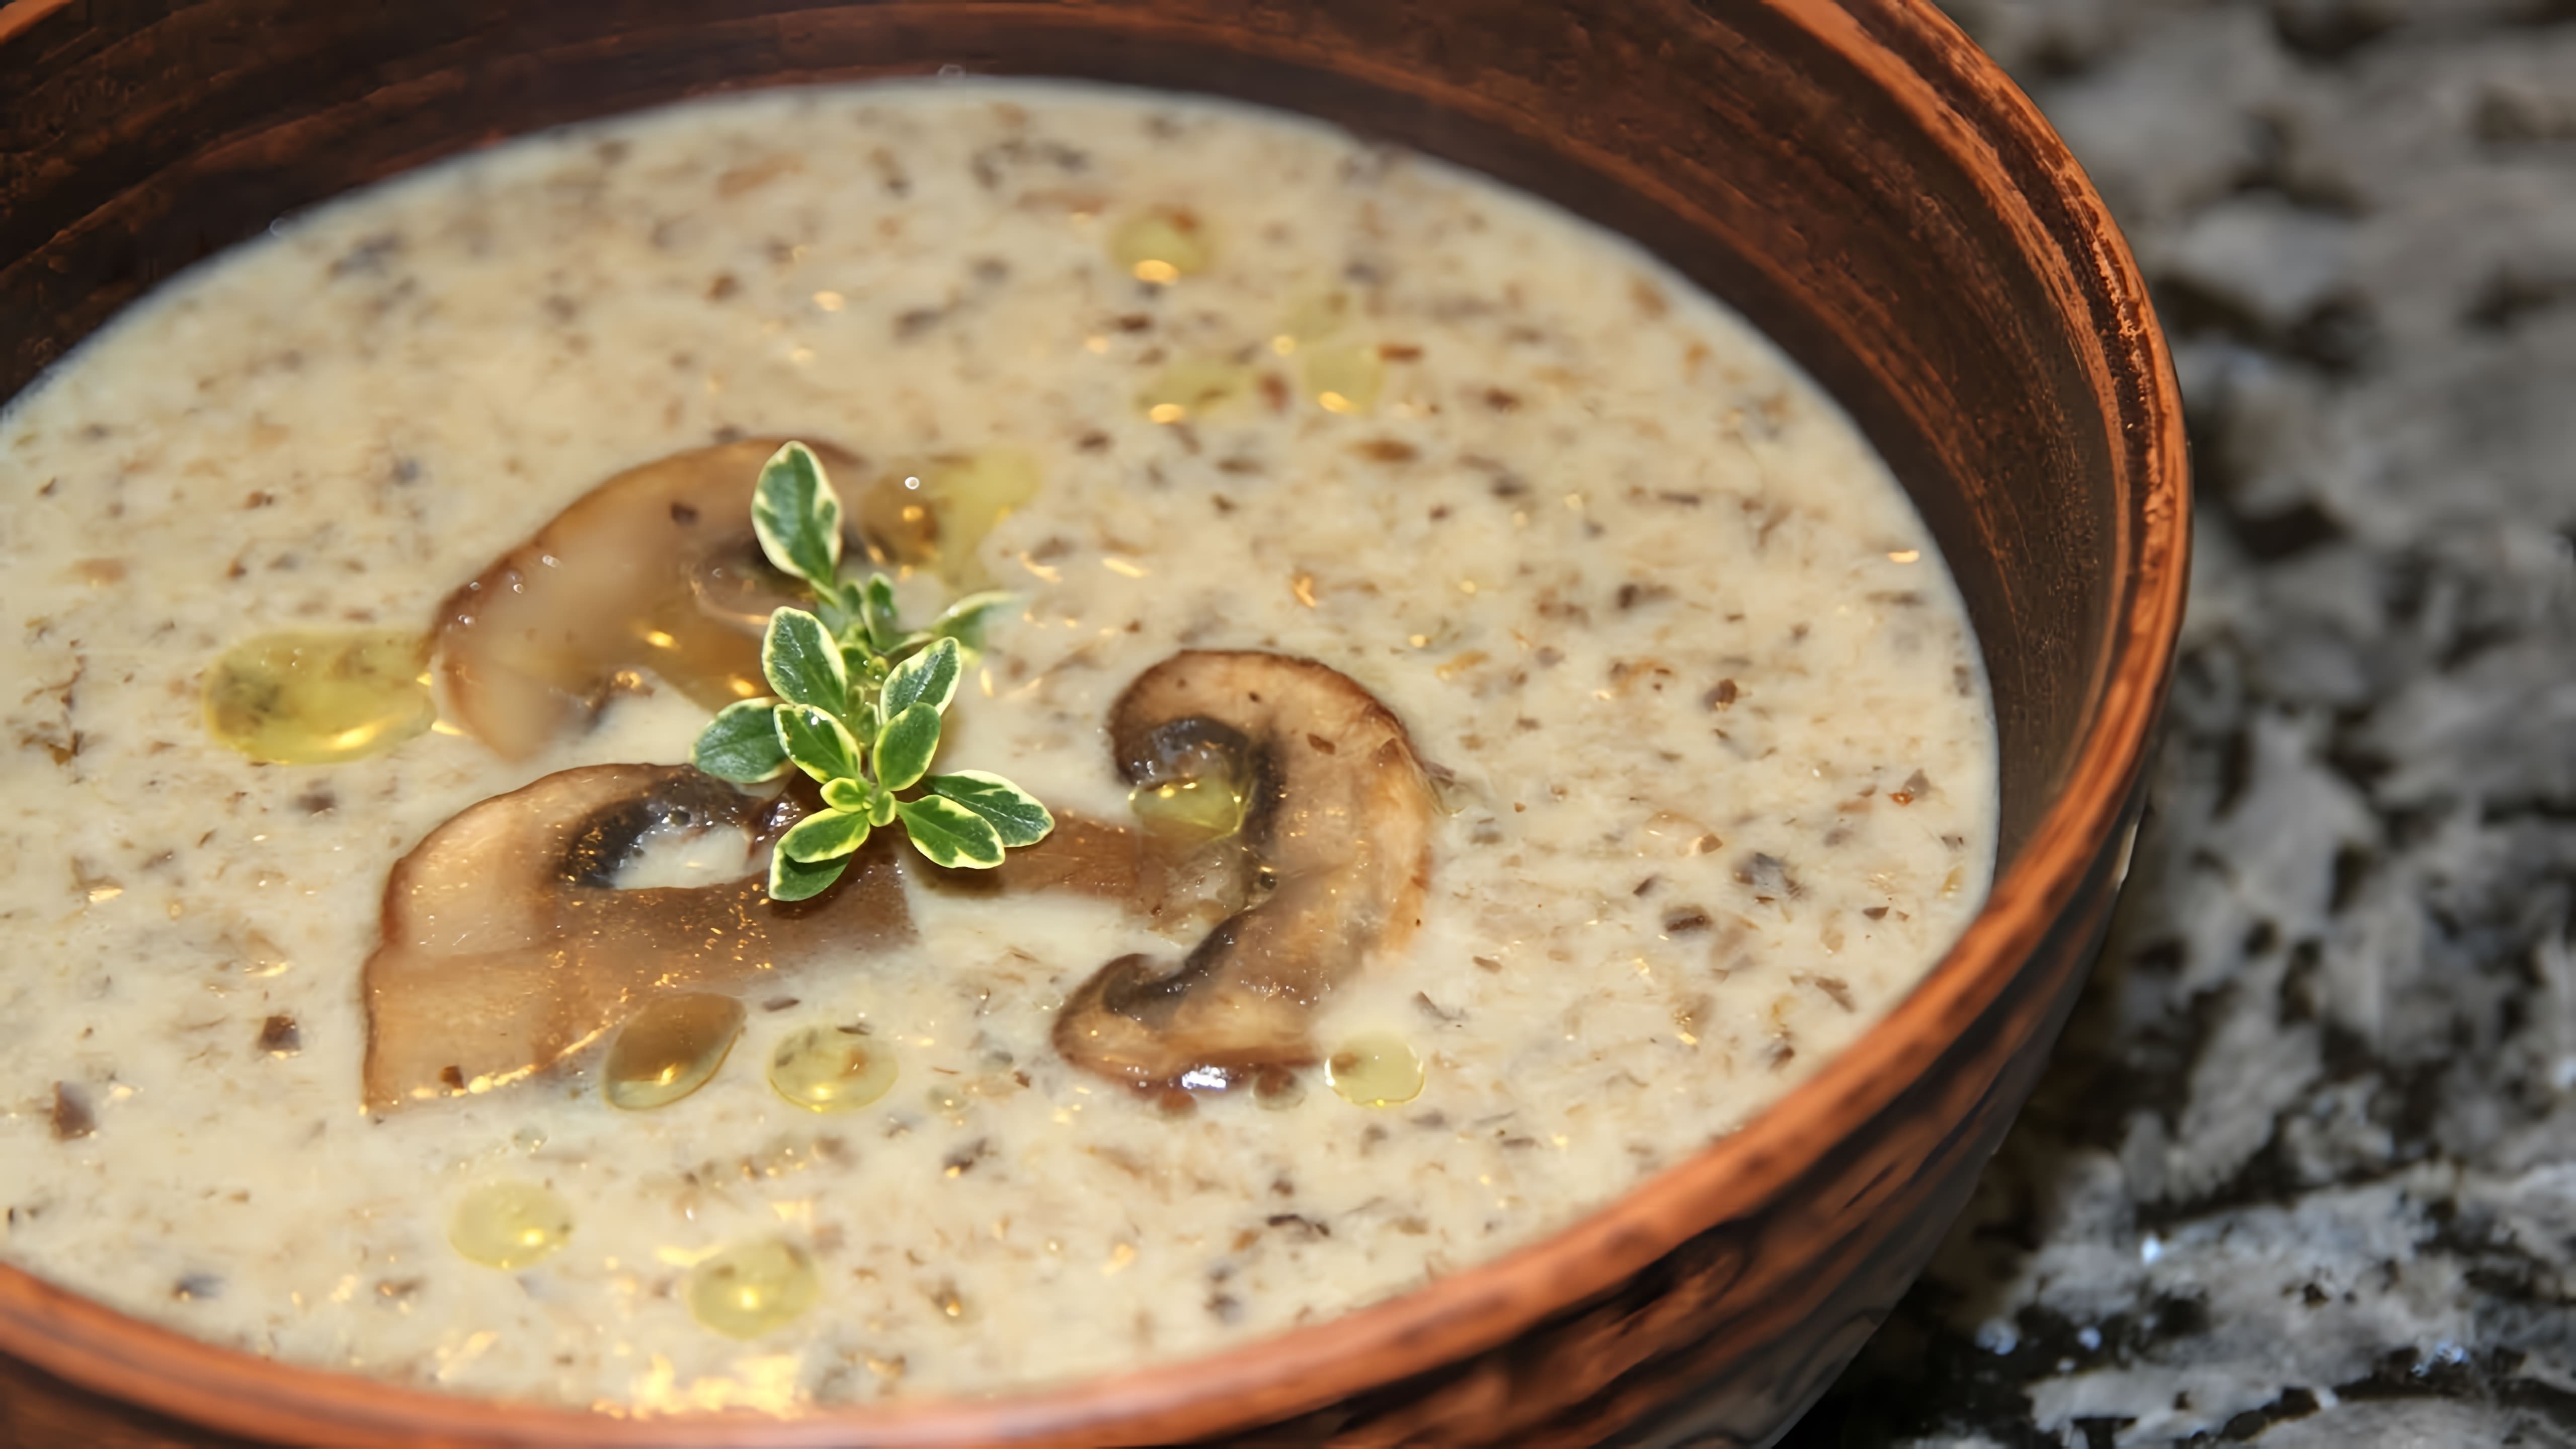 Видео - рецепт кремового грибного супа-пюре, который очень вкусный, ароматный и кремовый